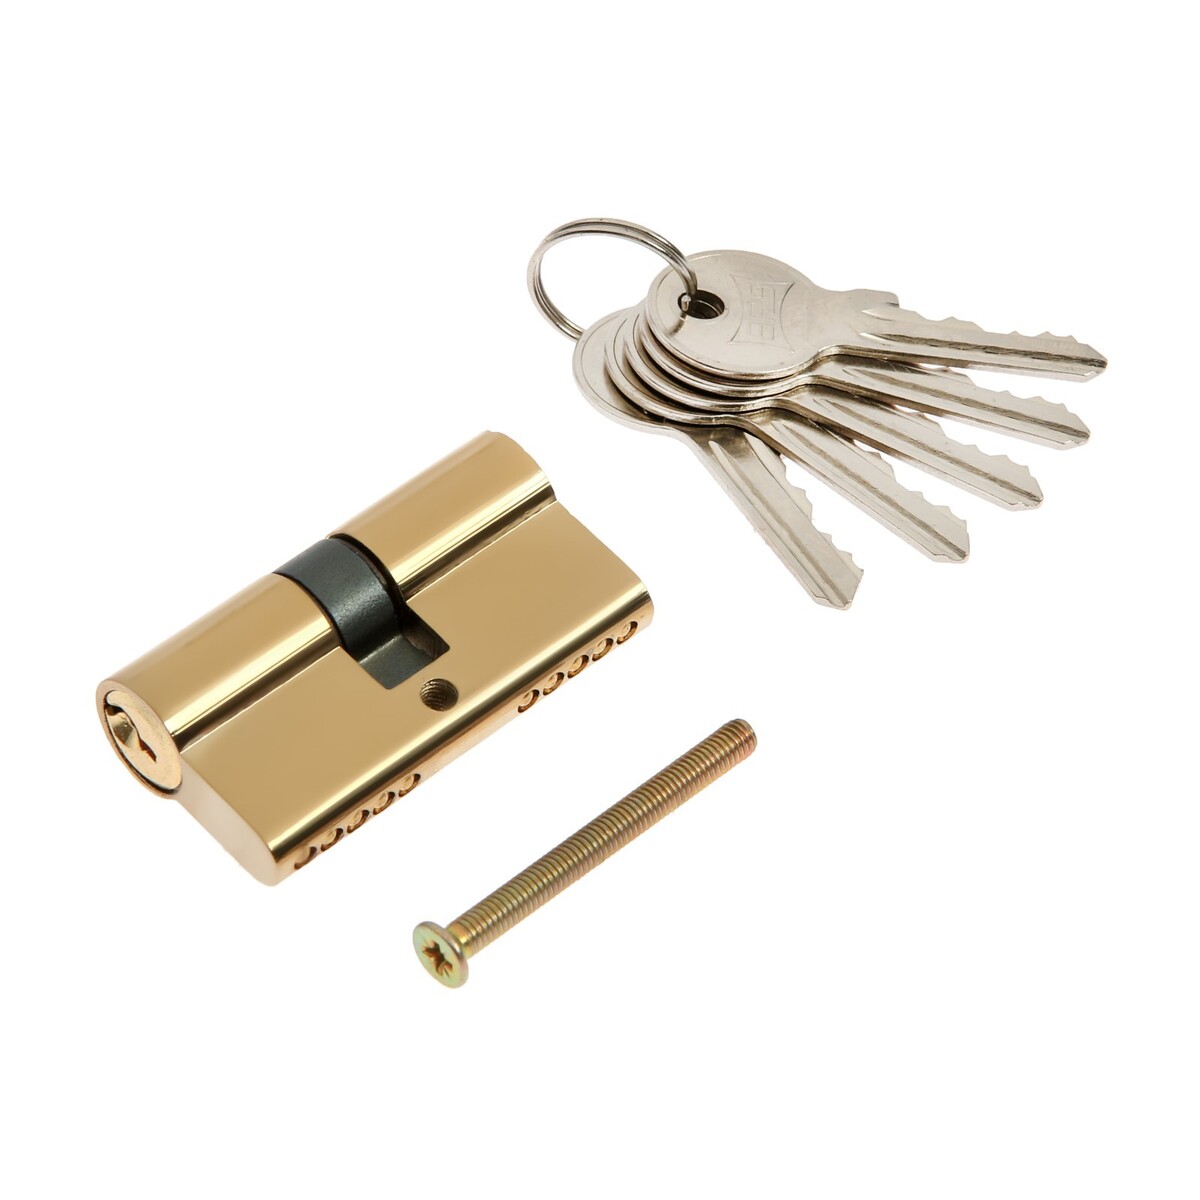 Цилиндровый механизм, 60 мм, английский ключ, 5 ключей, цвет золото замок врезной зенит зв4 3 05 00 00000526 ручка в комплекте цилиндровый бриллиант